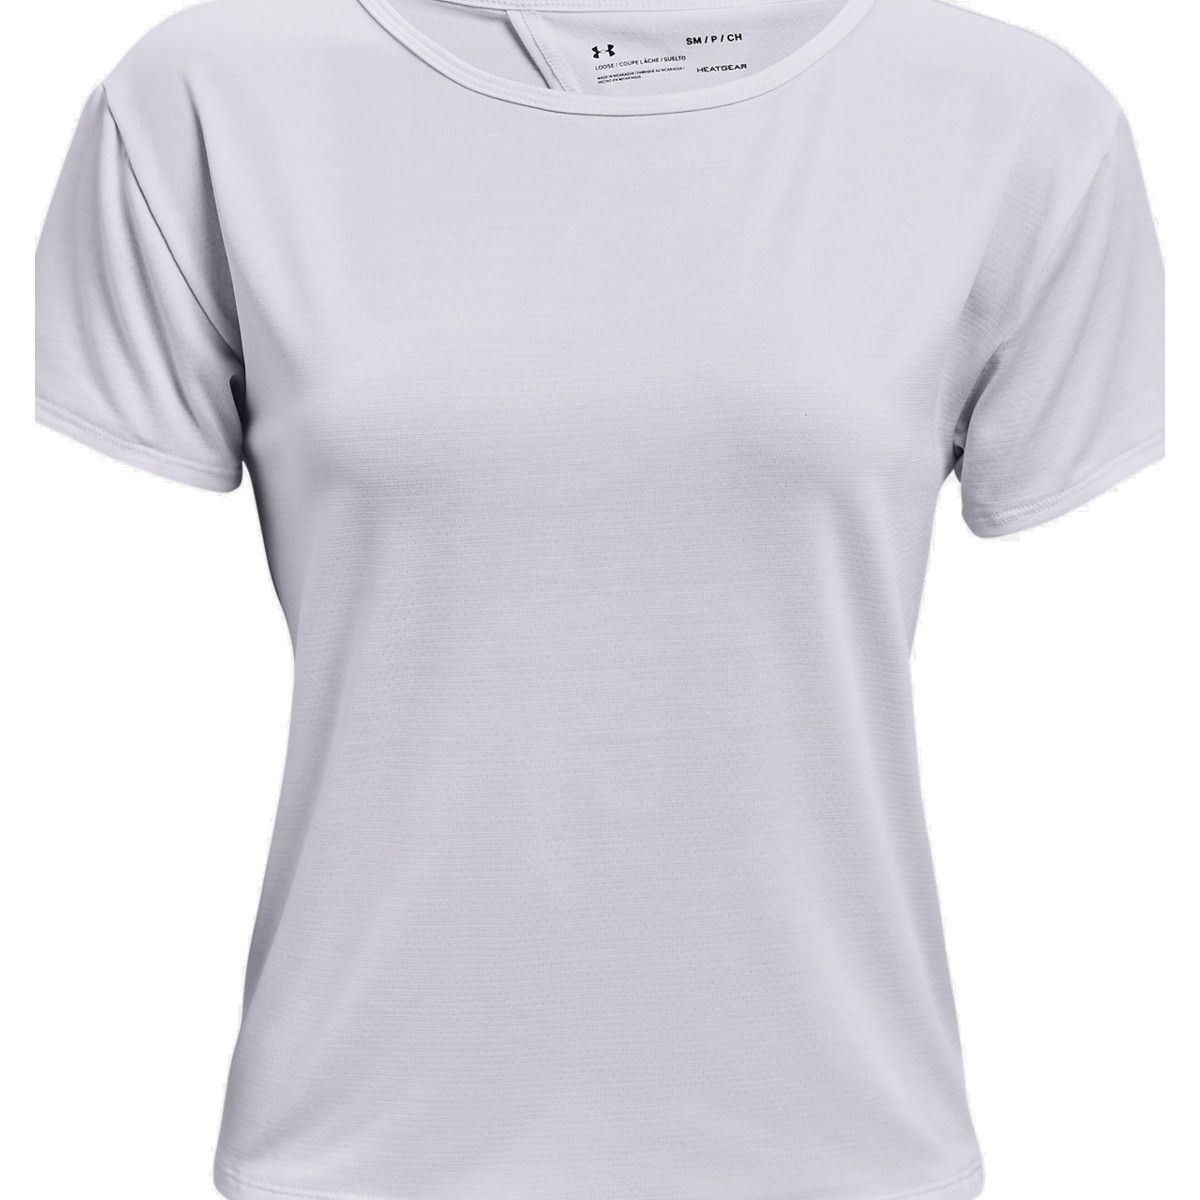 Under Armour Tech Vent Short Sleeve Women's T-Shirt 1364661